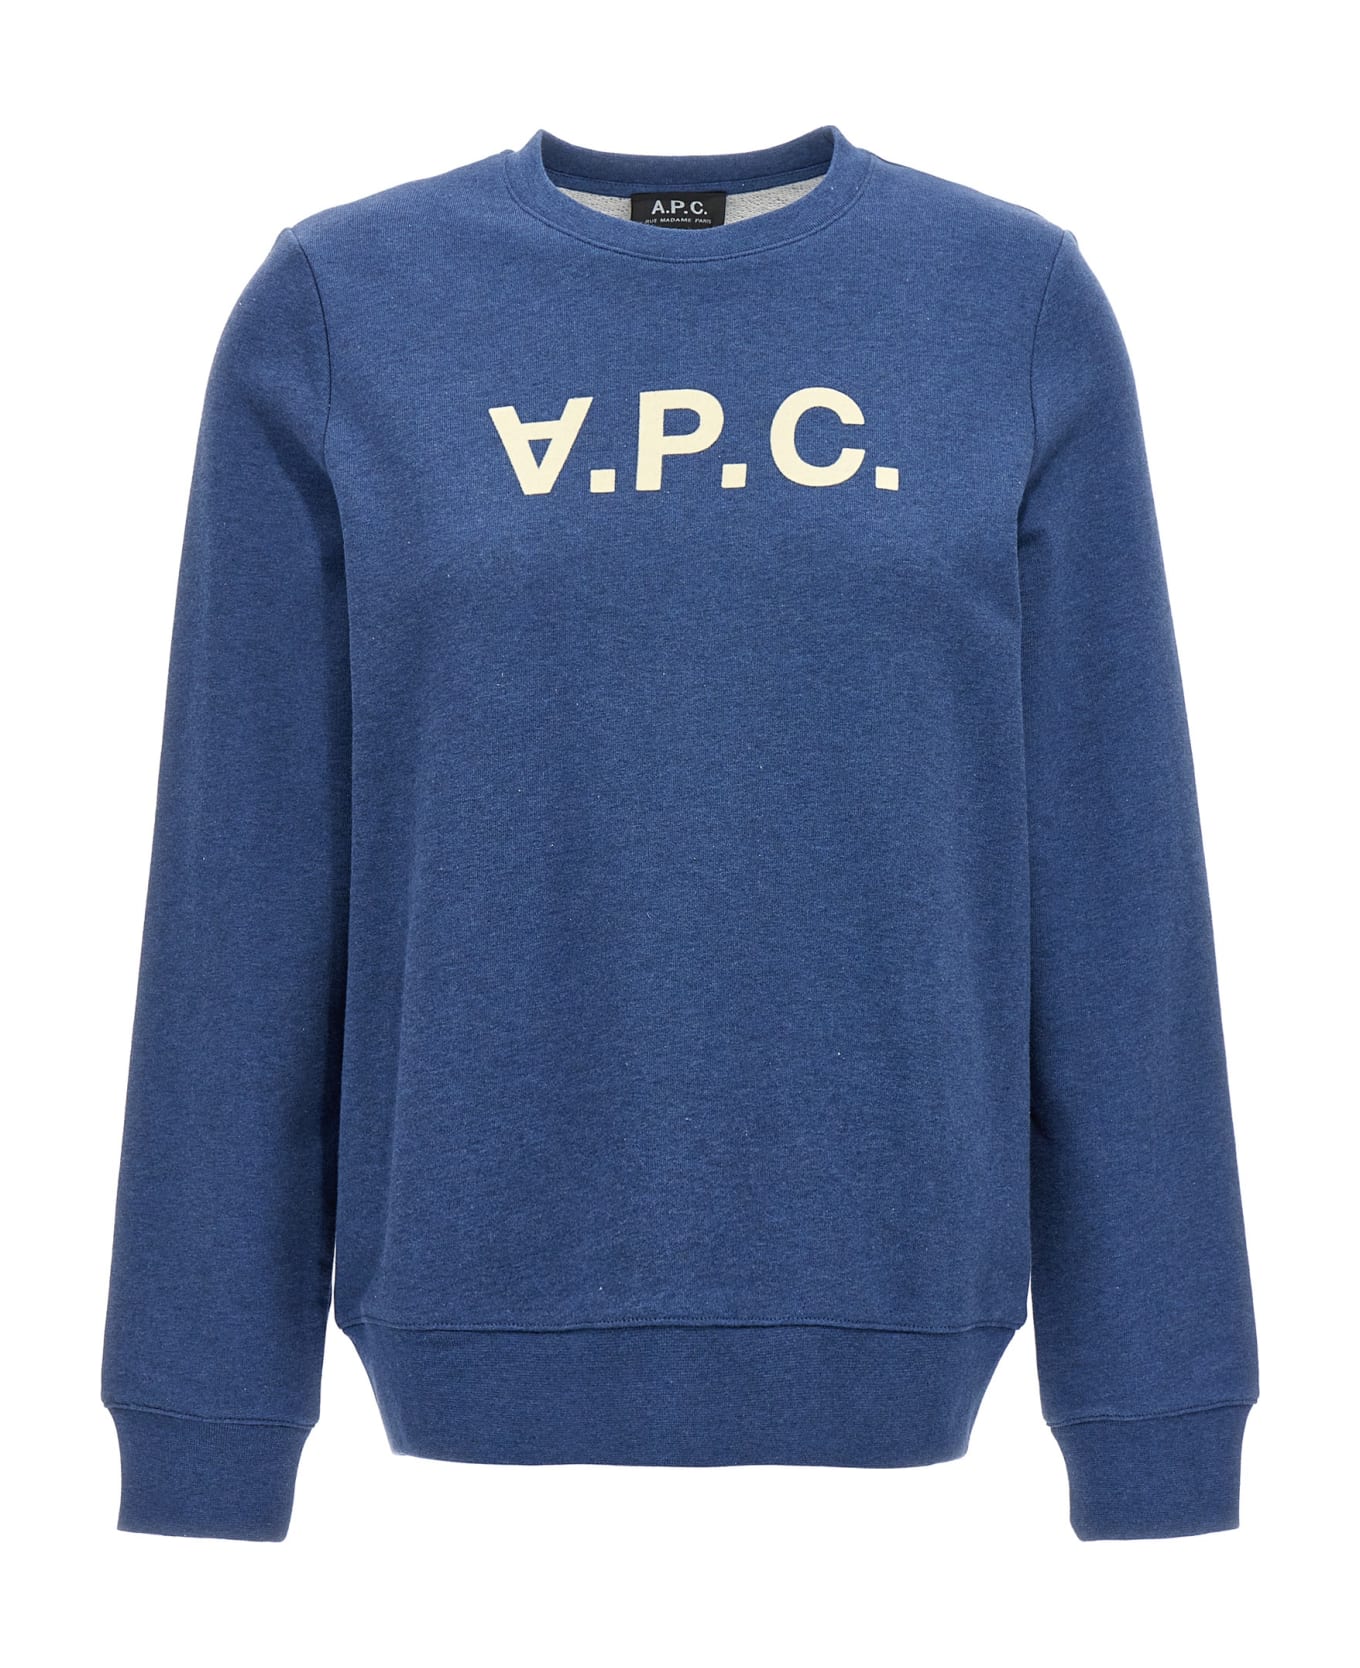 A.P.C. Viva Sweatshirt - BLUE